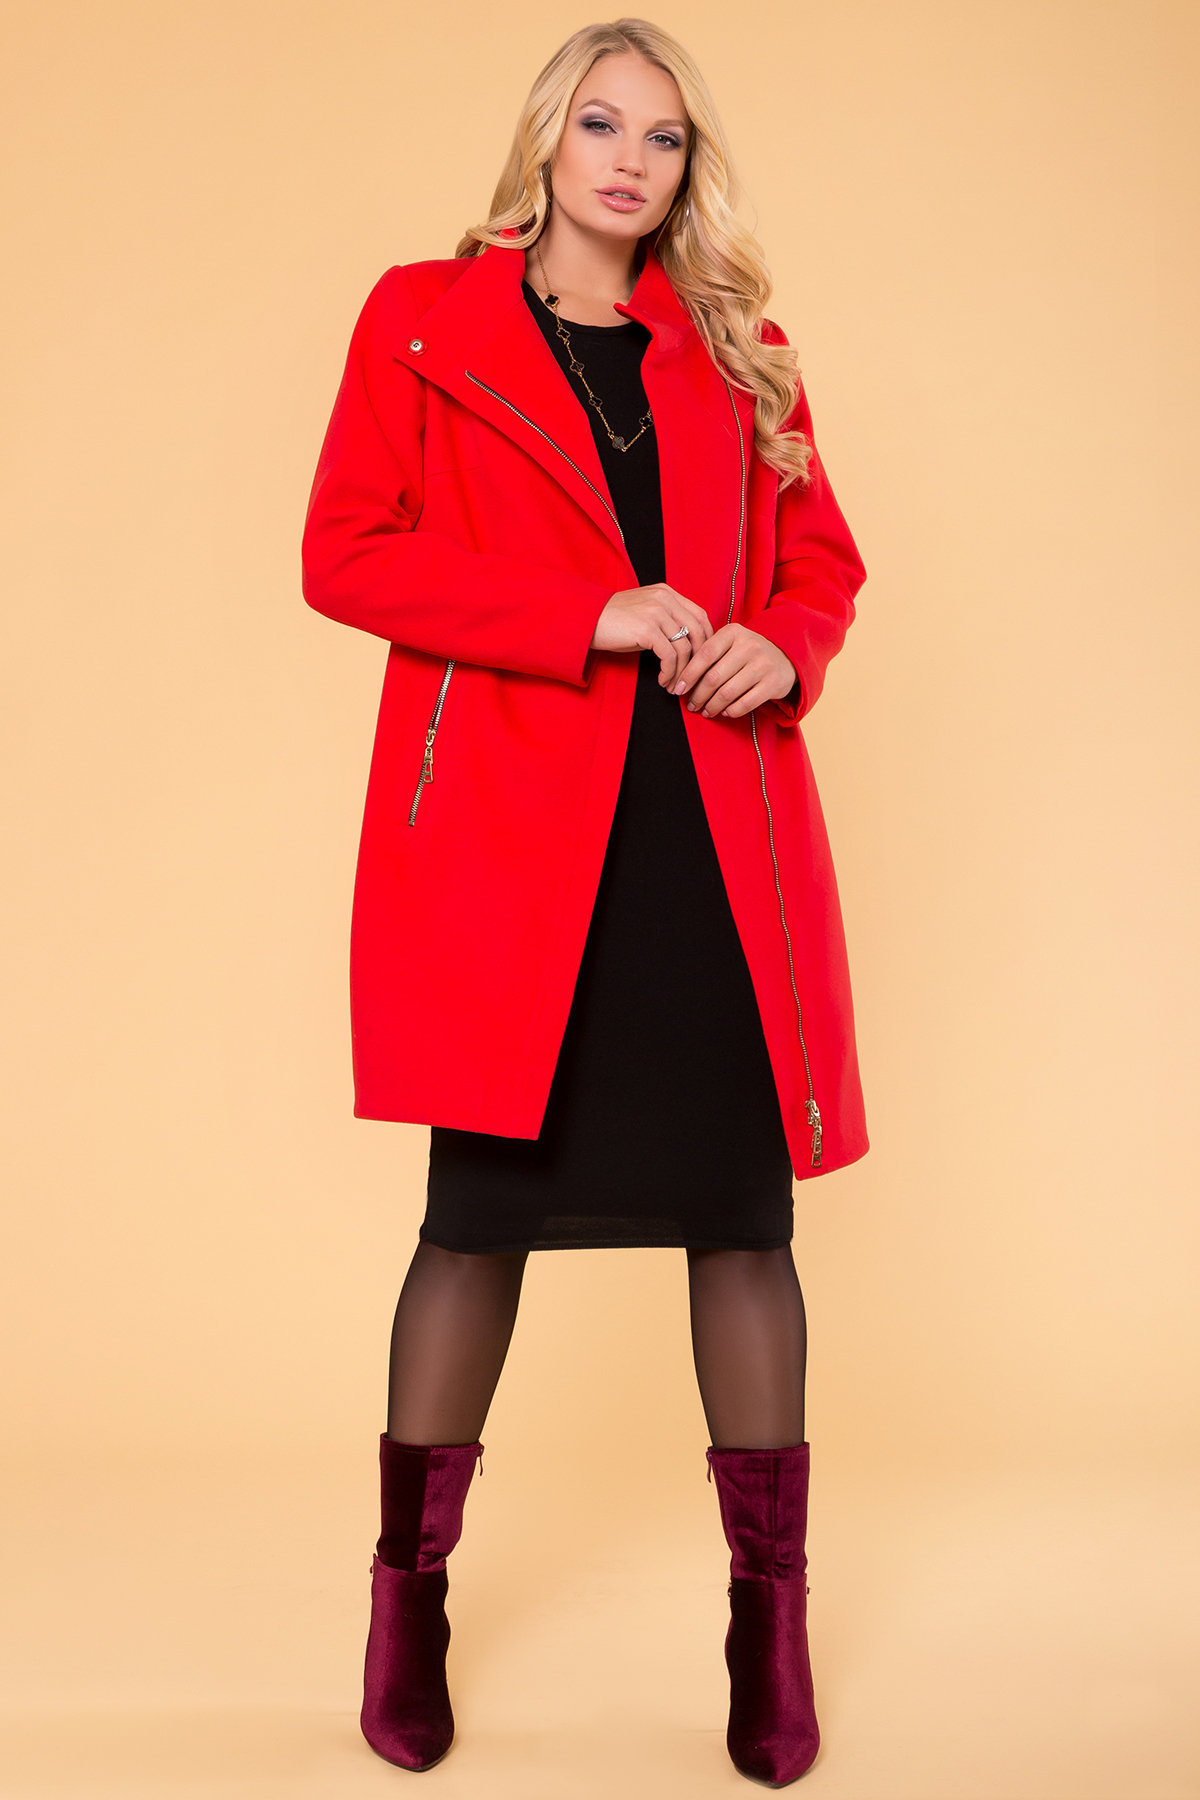 Красное демисезонное пальто Эльпассо 1 Donna 1096 АРТ. 38272 Цвет: Красный B-020 - фото 3, интернет магазин tm-modus.ru